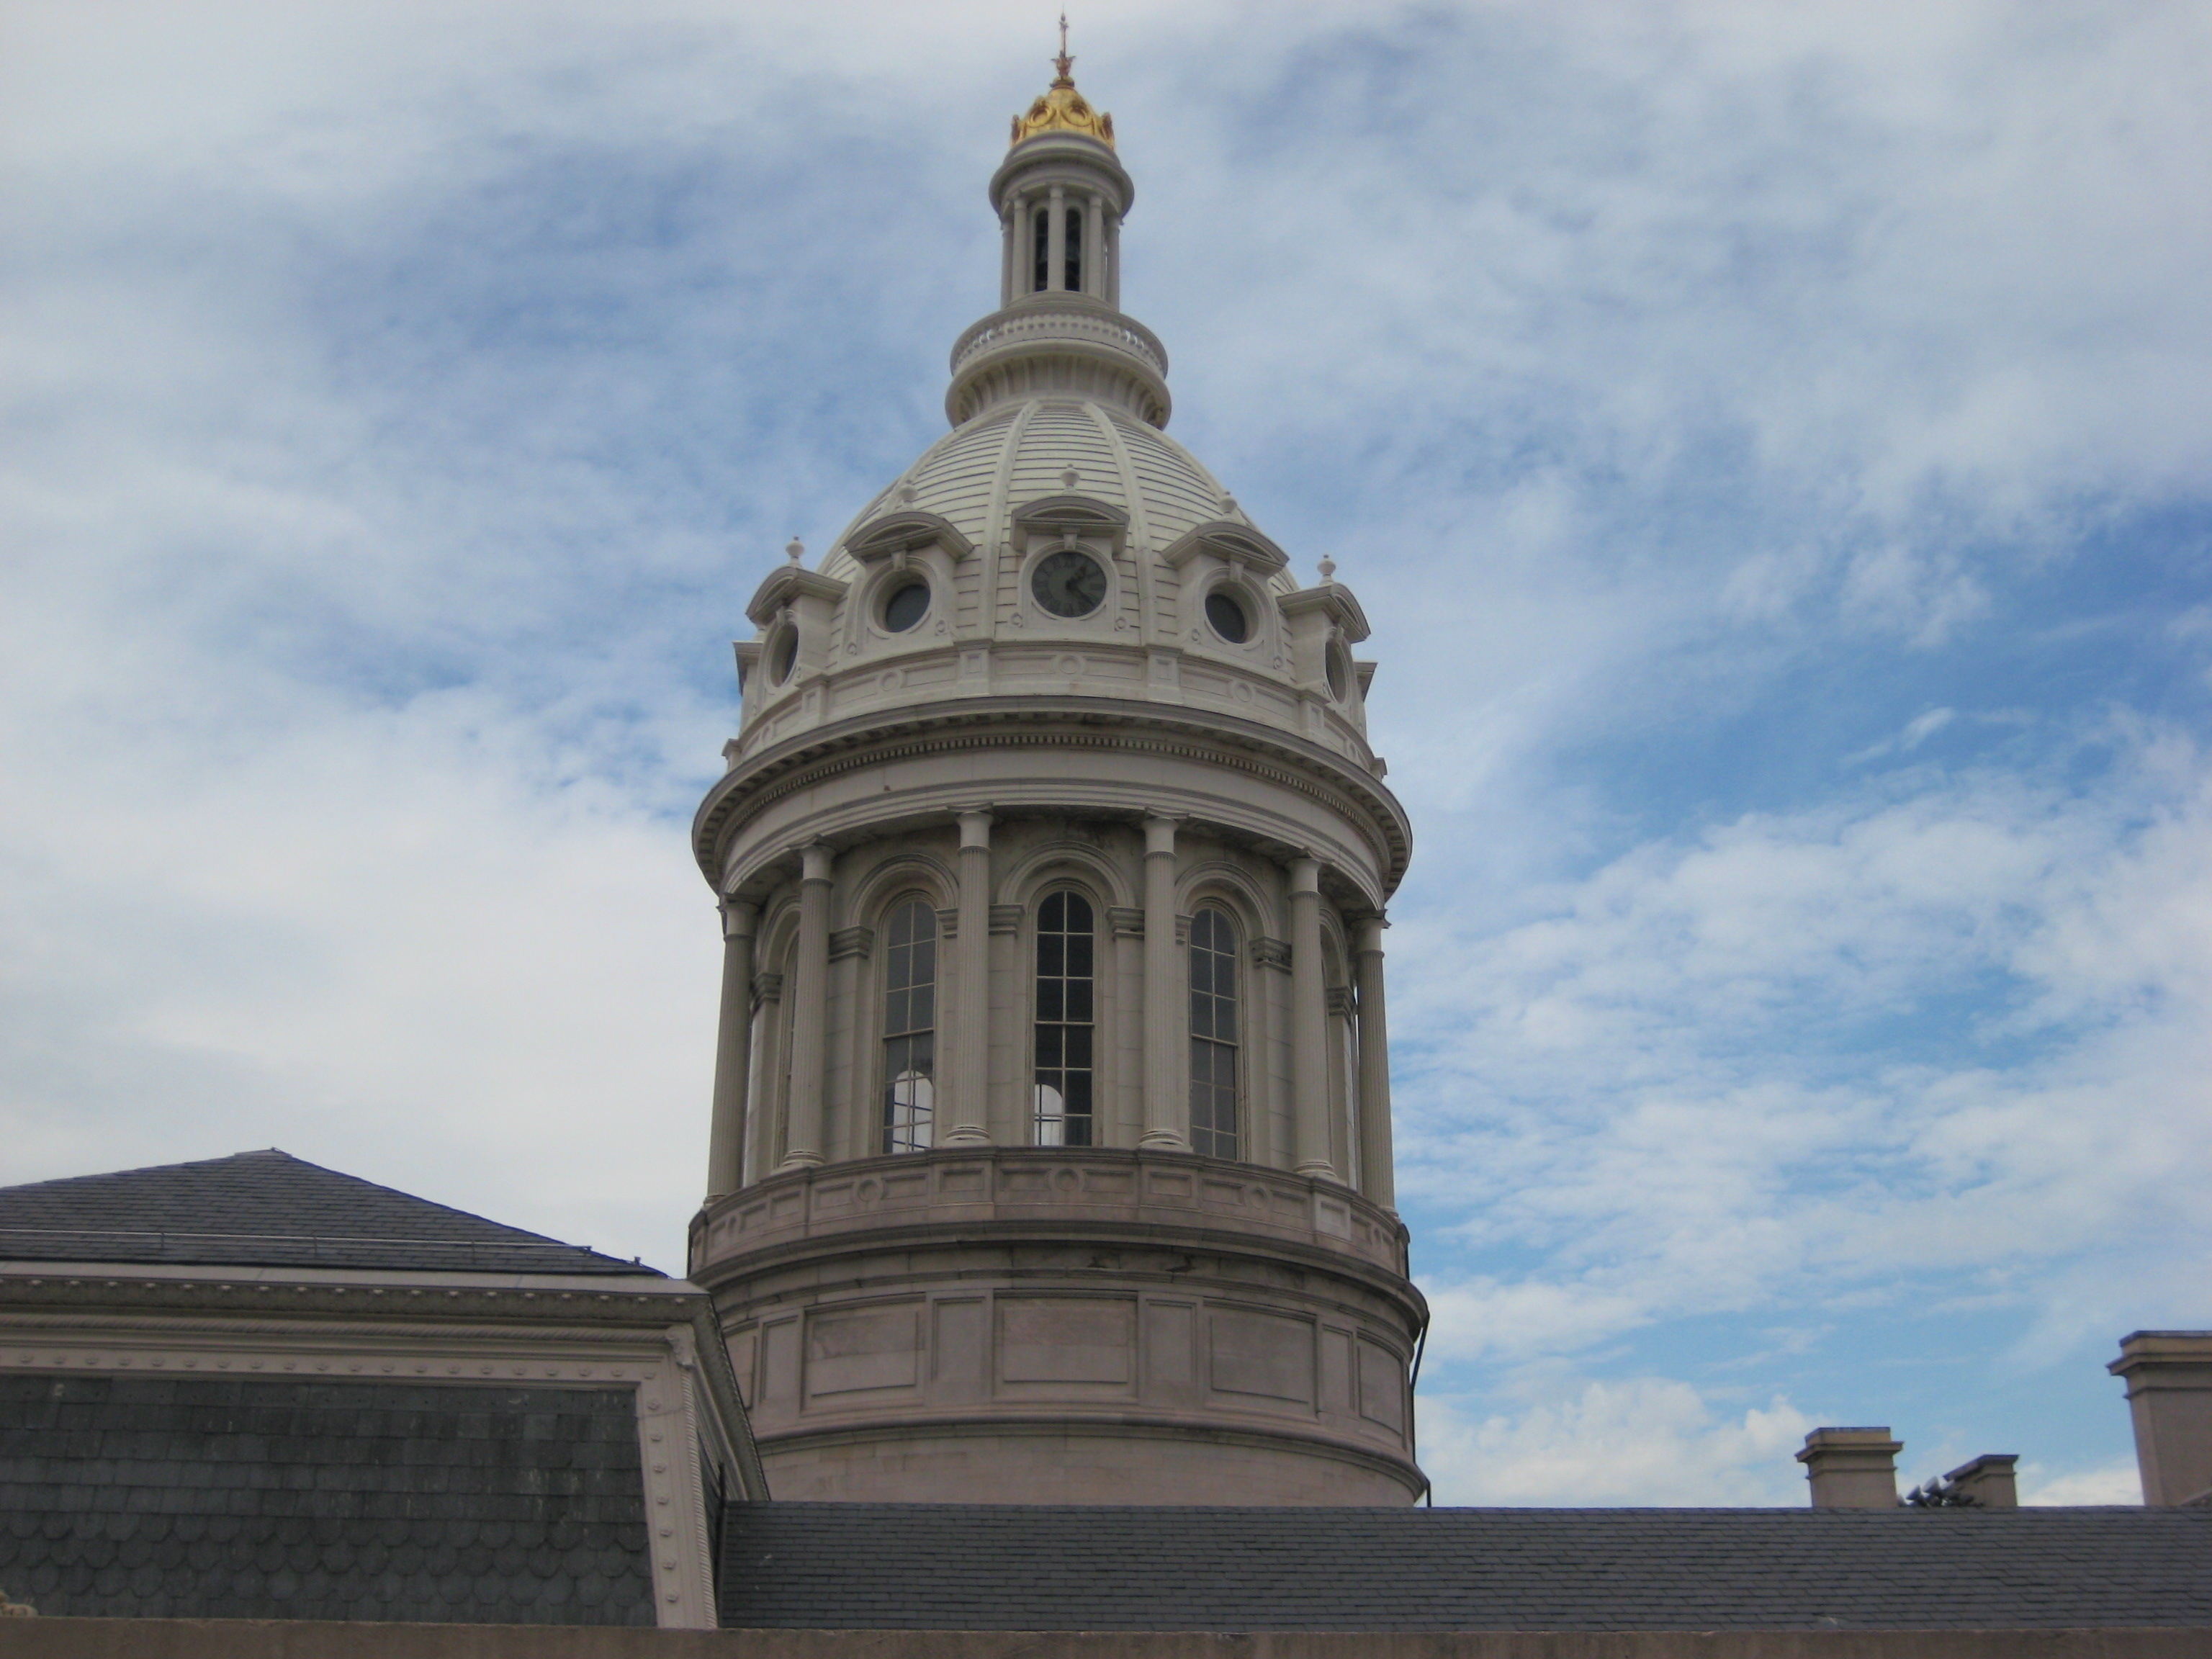 Baltimore City Hall dome